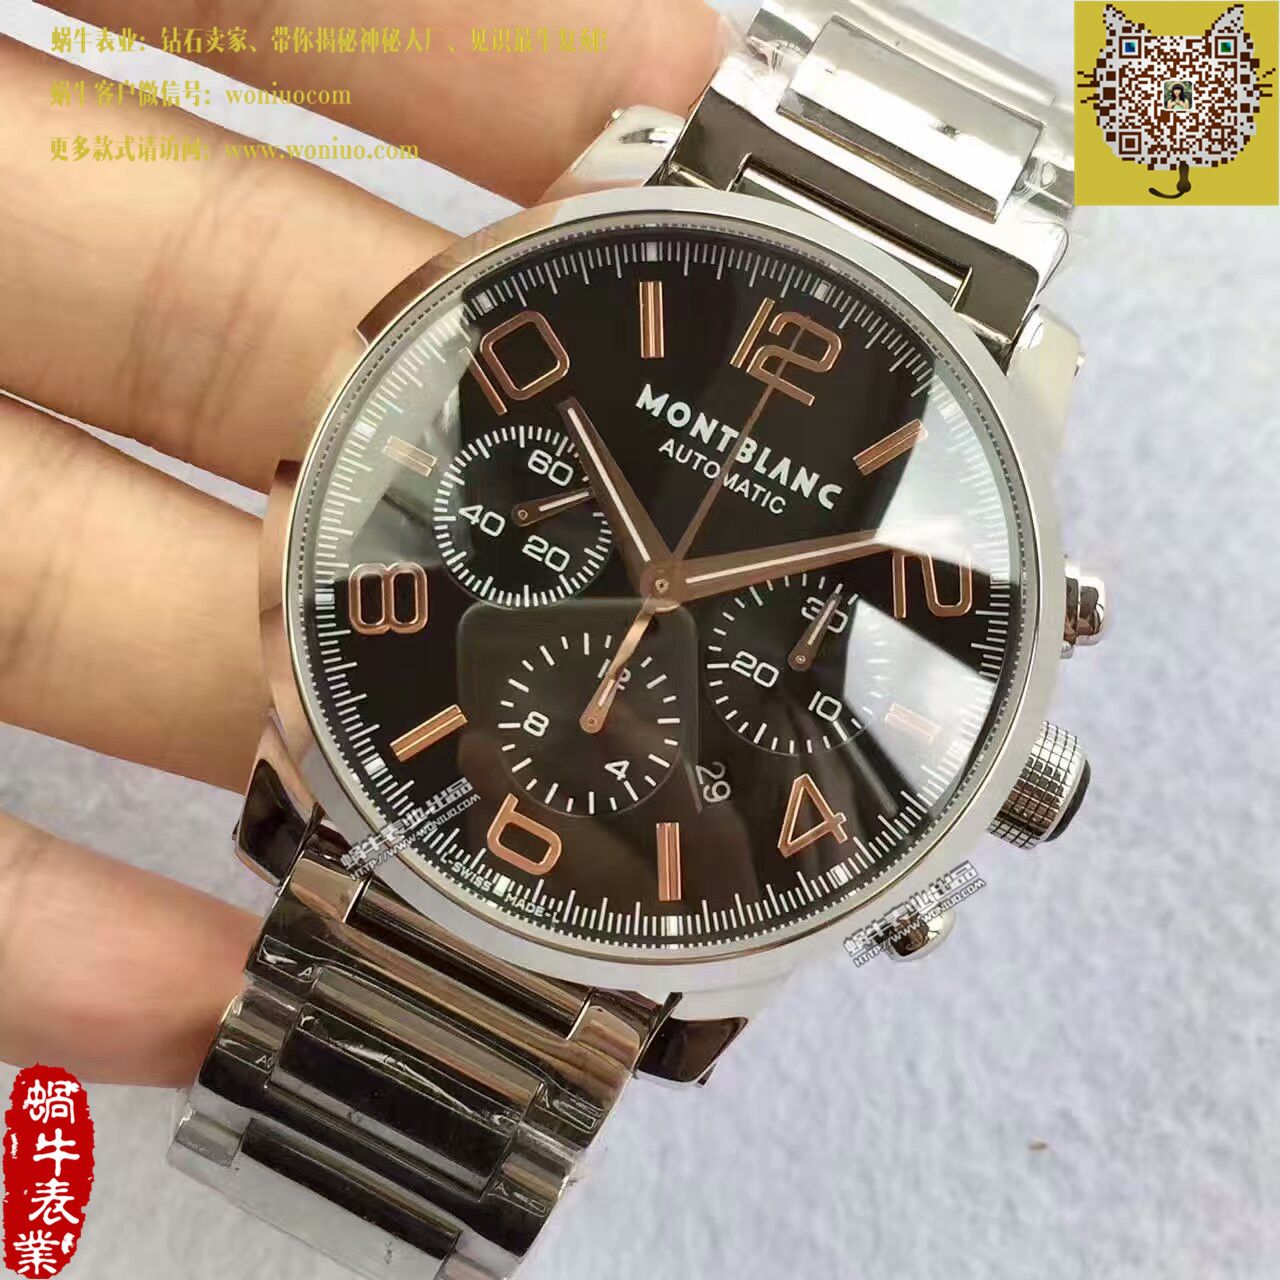 【台湾厂1比1超A高仿手表】万宝龙时光行者系列U0101548腕表 / MB009